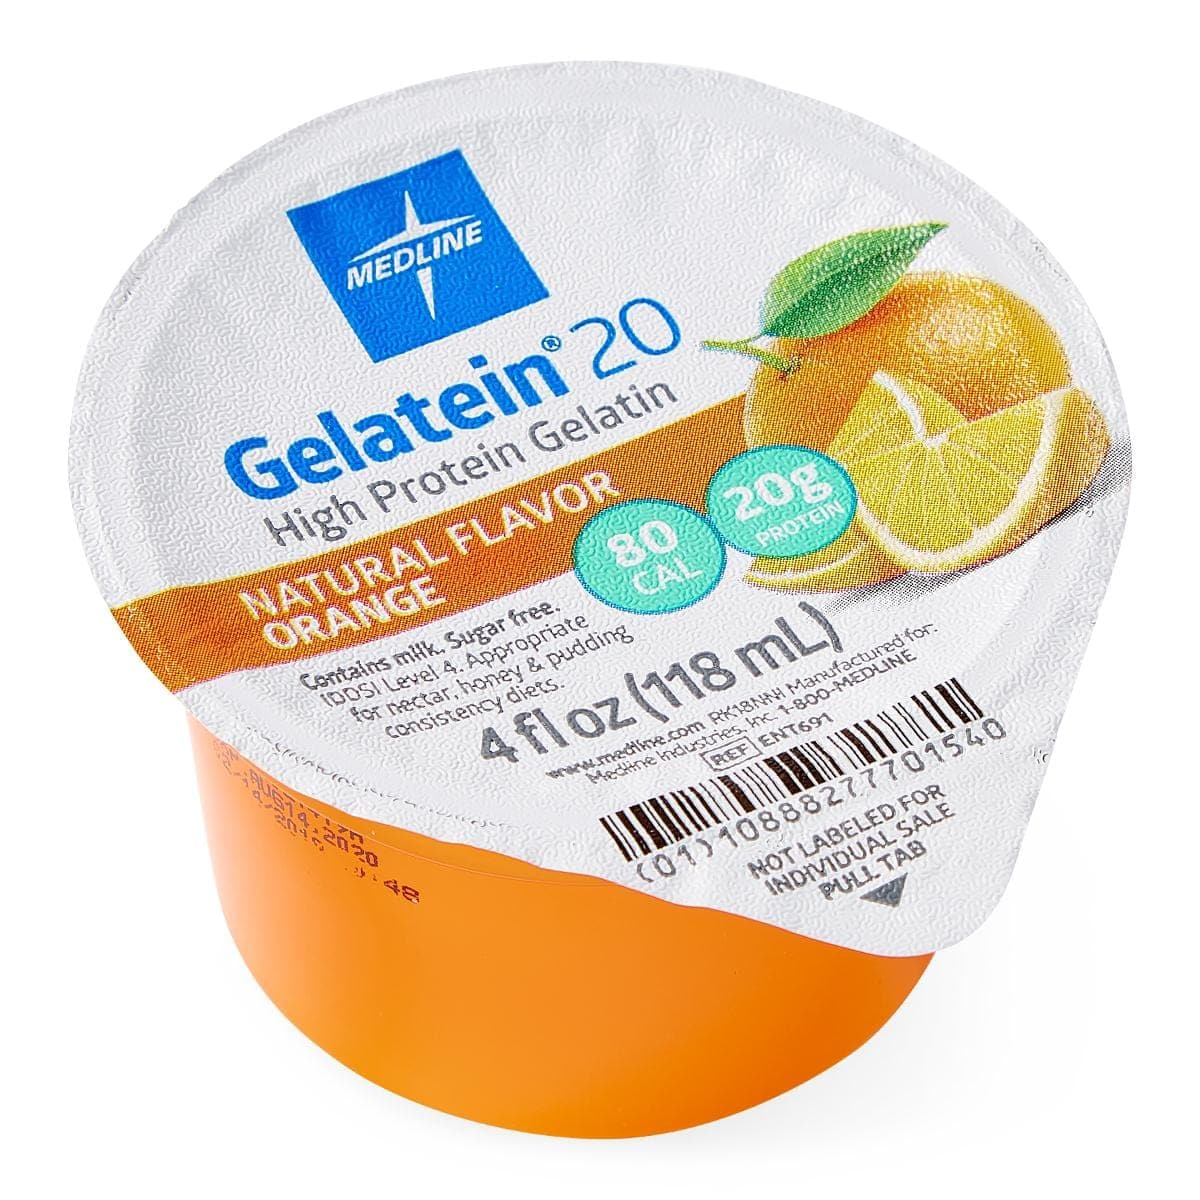 Medline Orange Medline Active Gelatein20